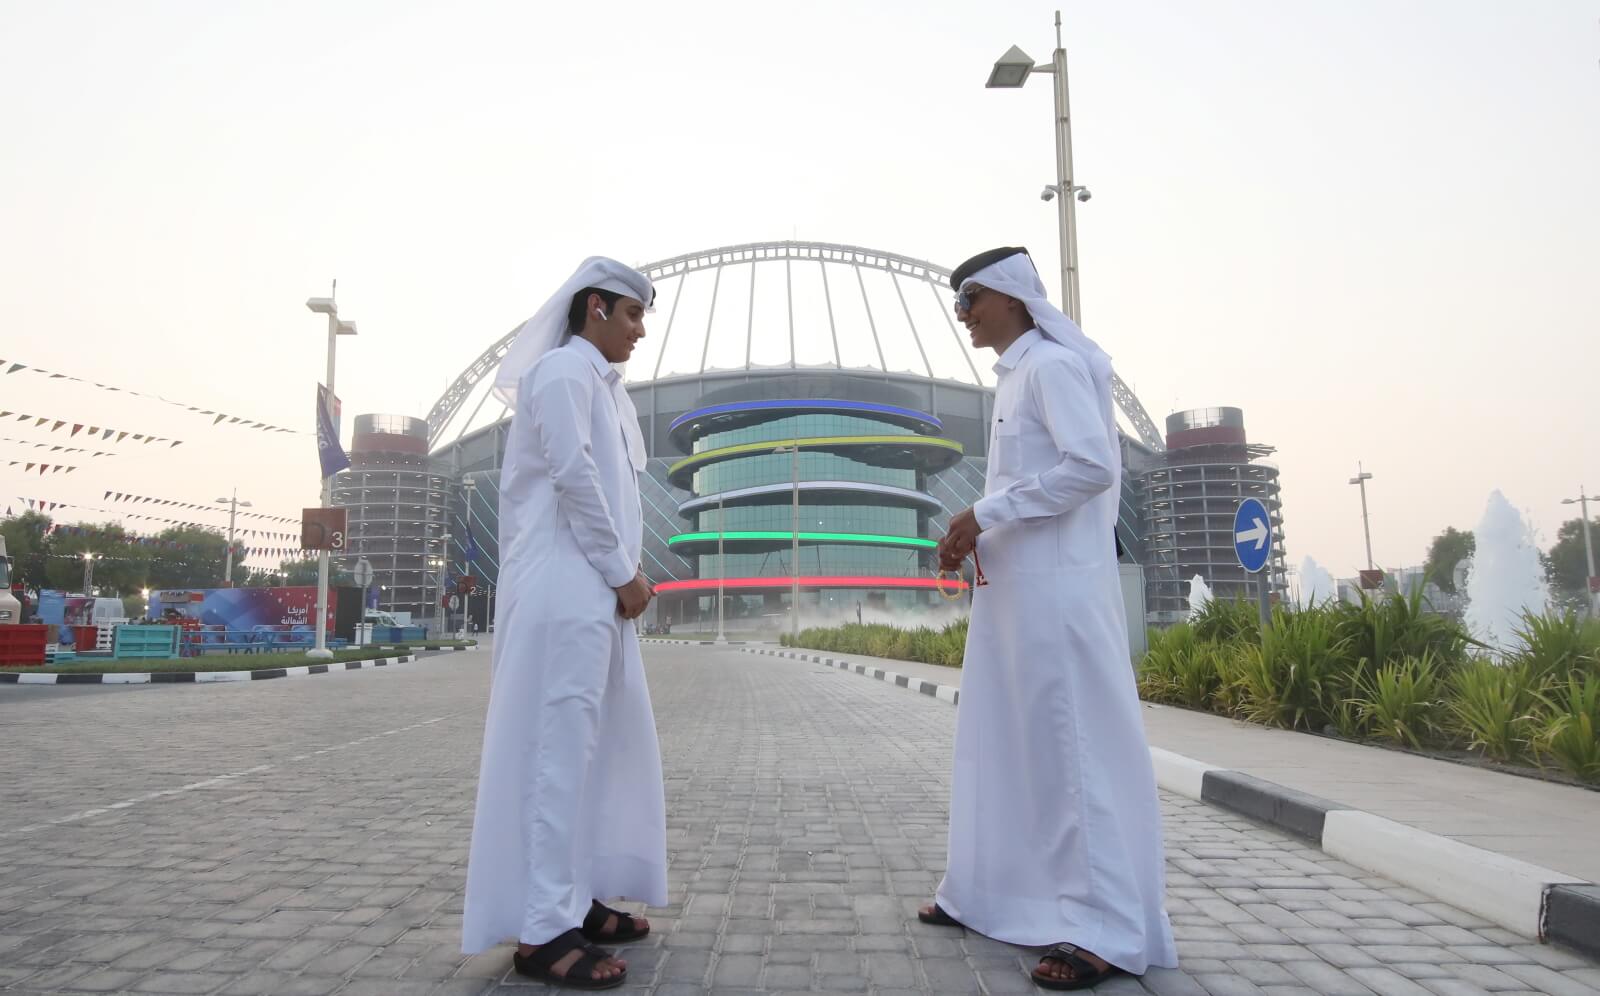 Mistrzostwa Świata w lekkoatletyce w Katarze fot. EPA/YAYHA ARHAB